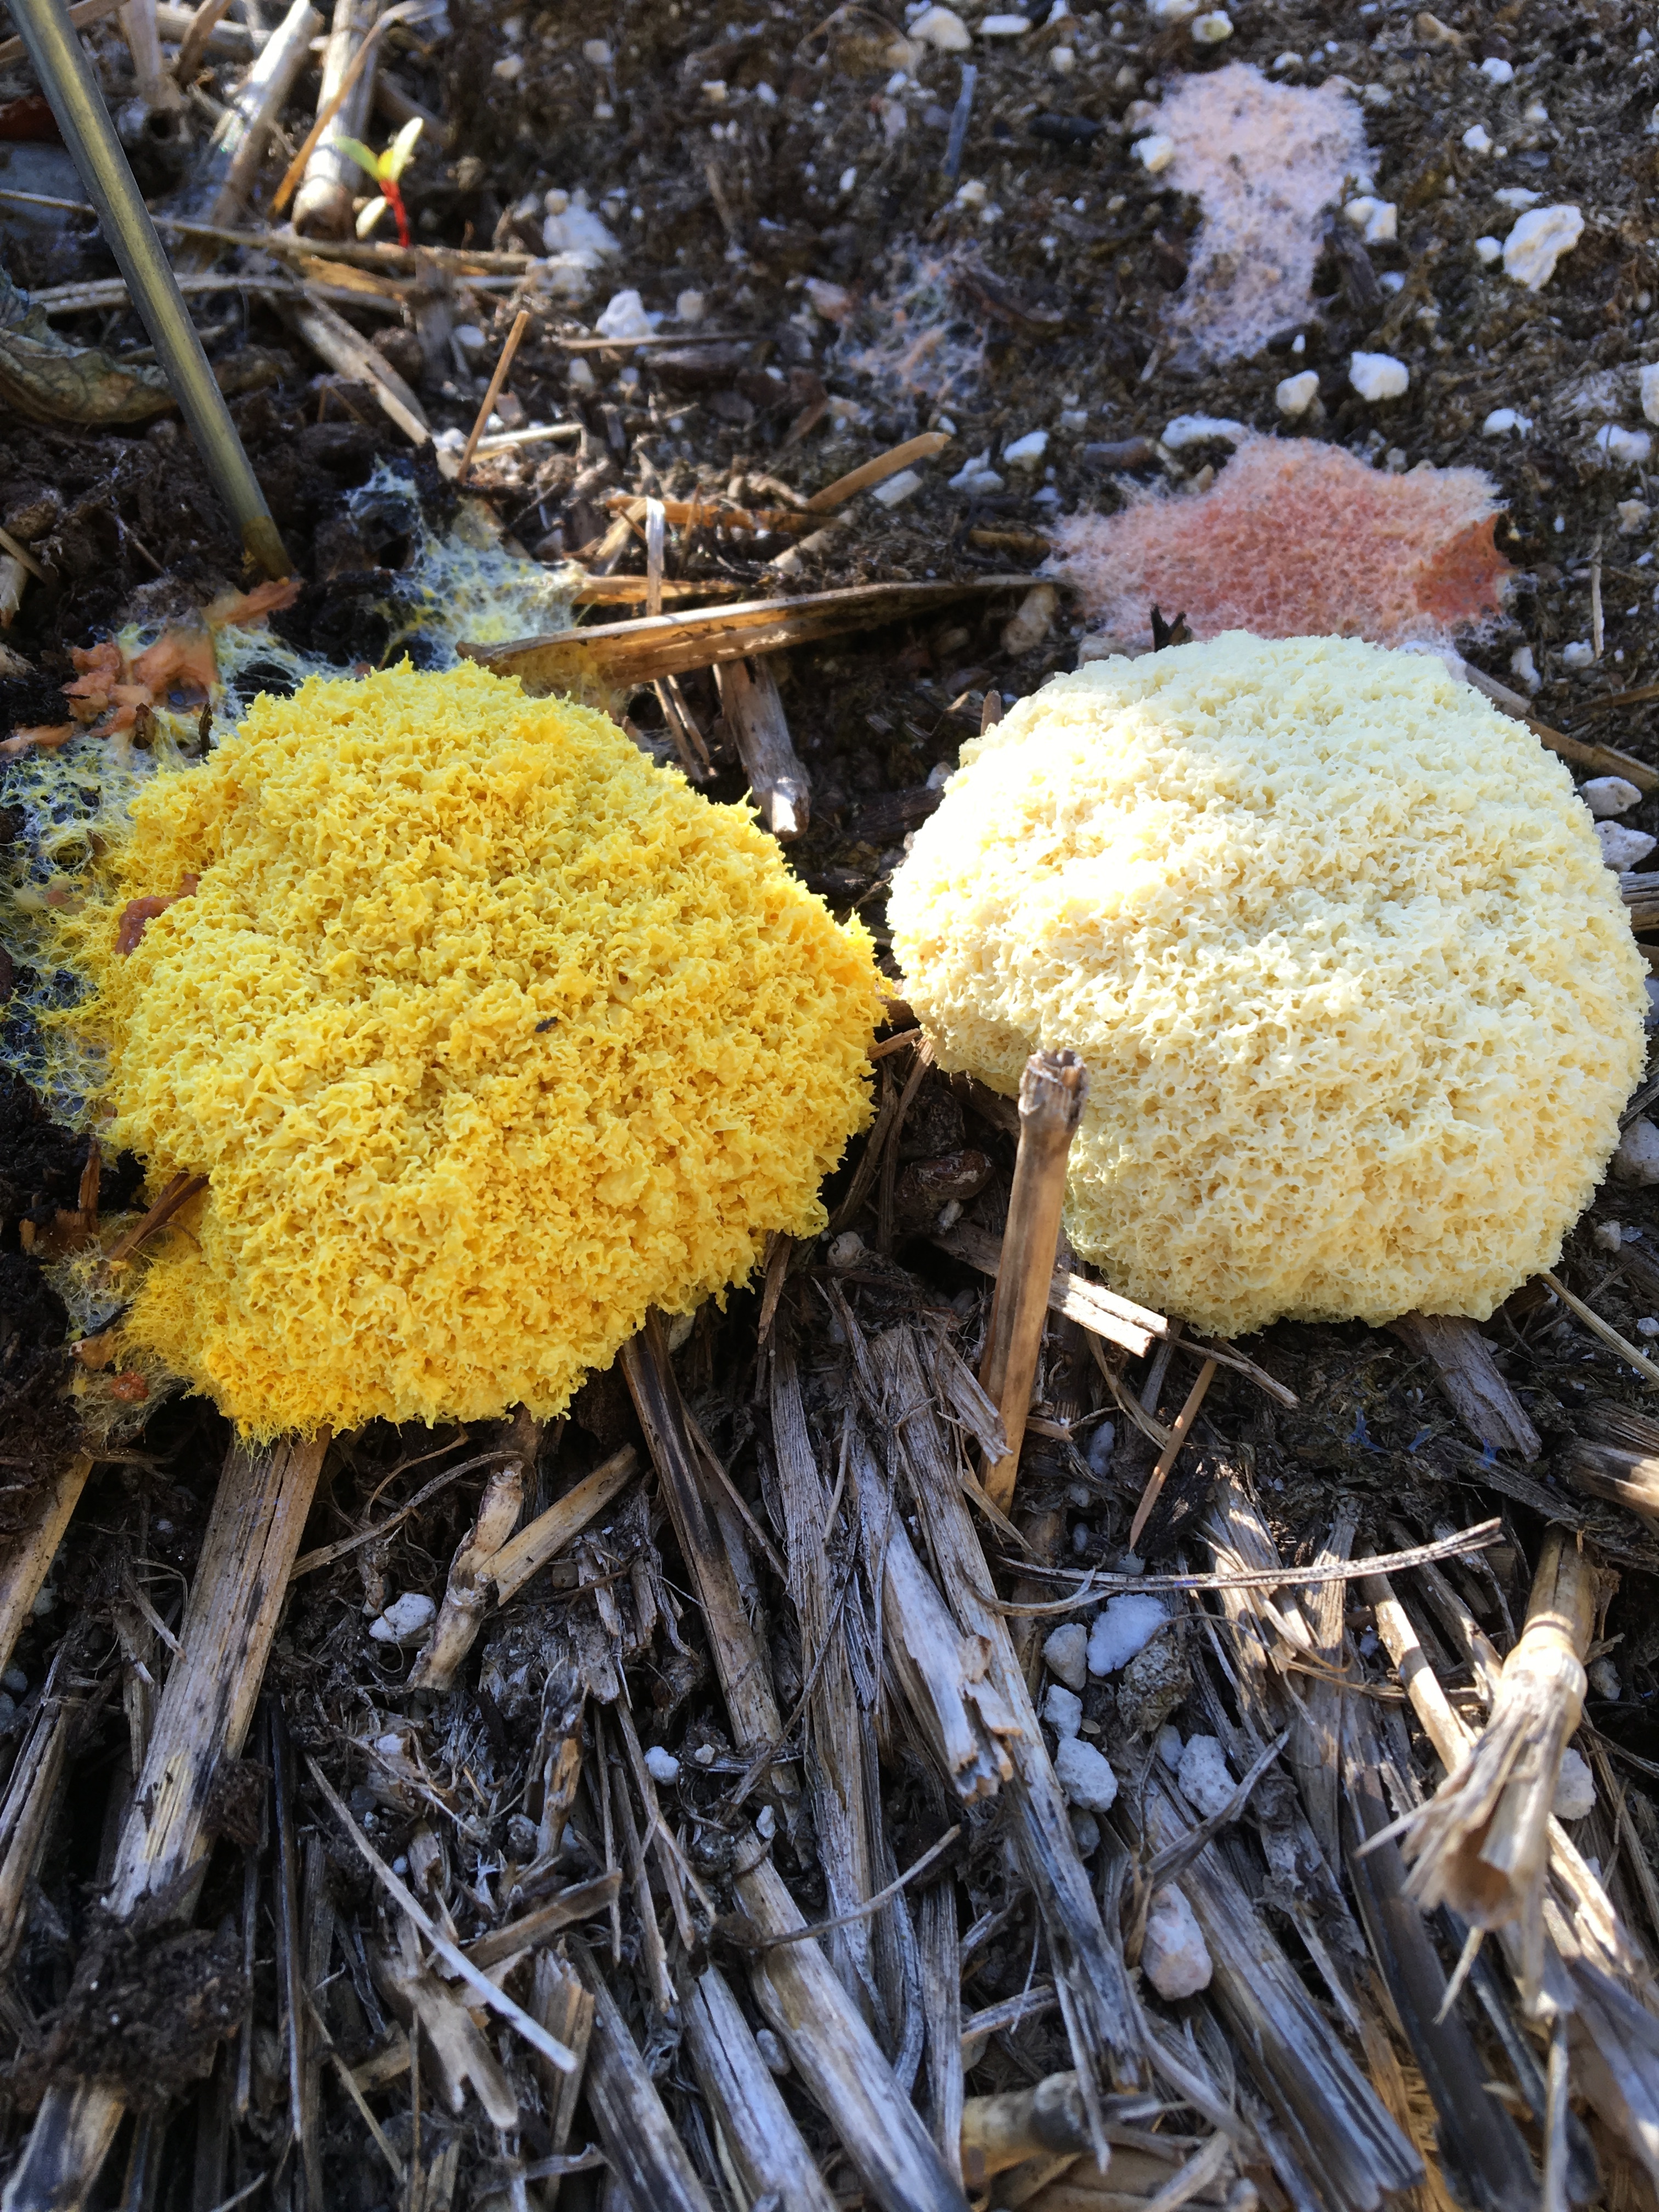 Weird fungus in hay bale garden - Ask an Expert